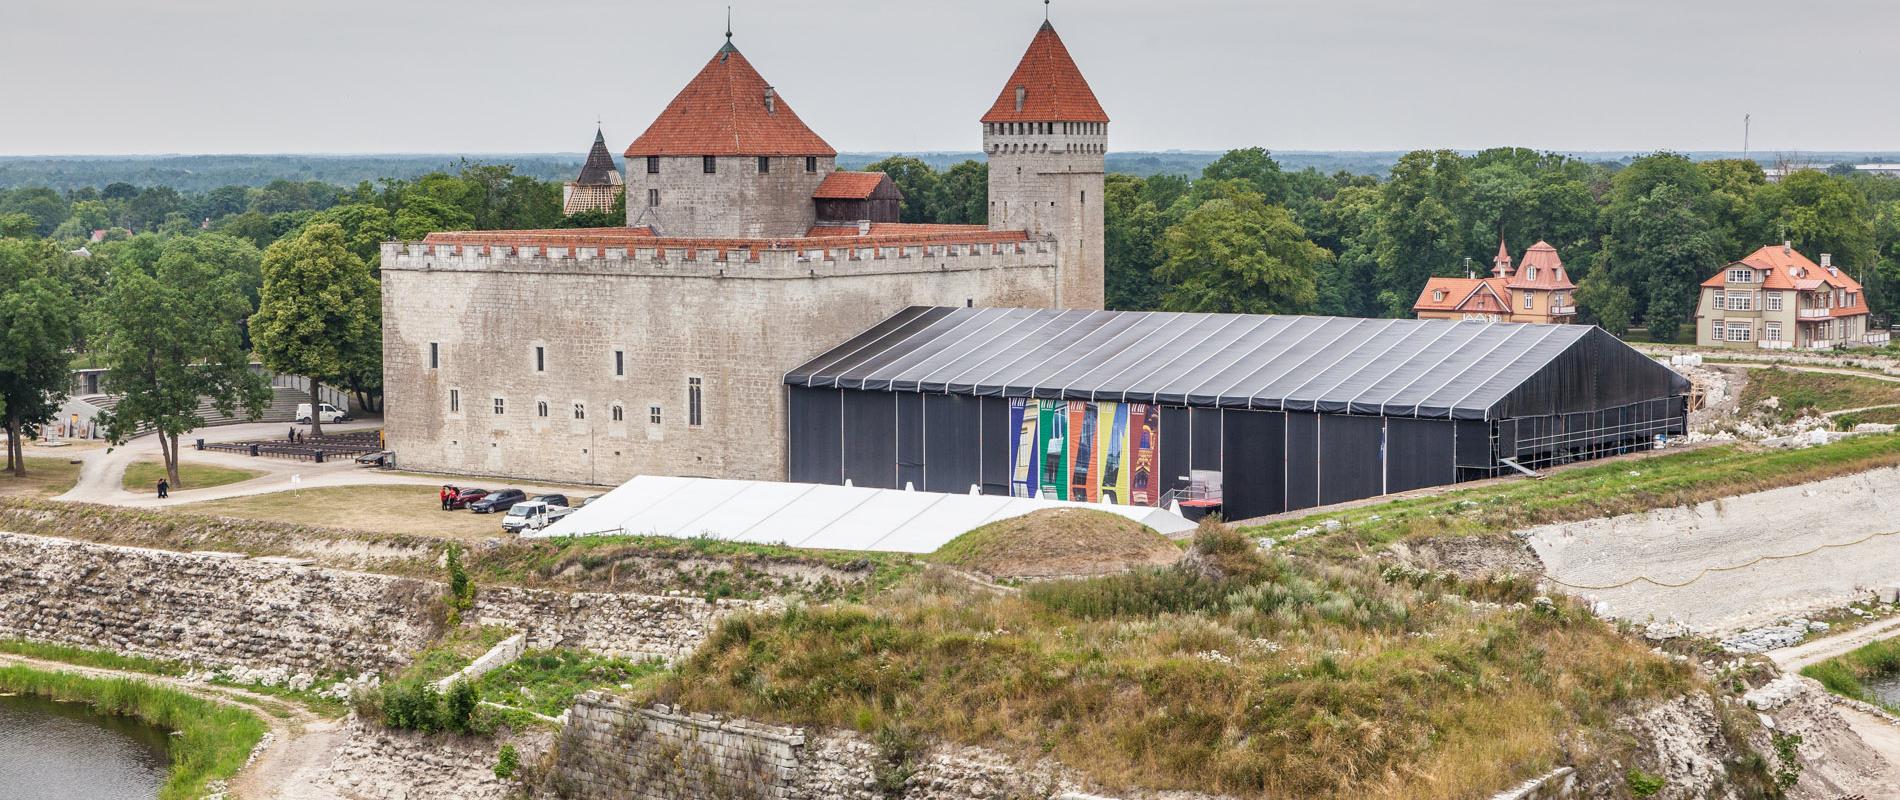 Saaremaa Opernfestspiele